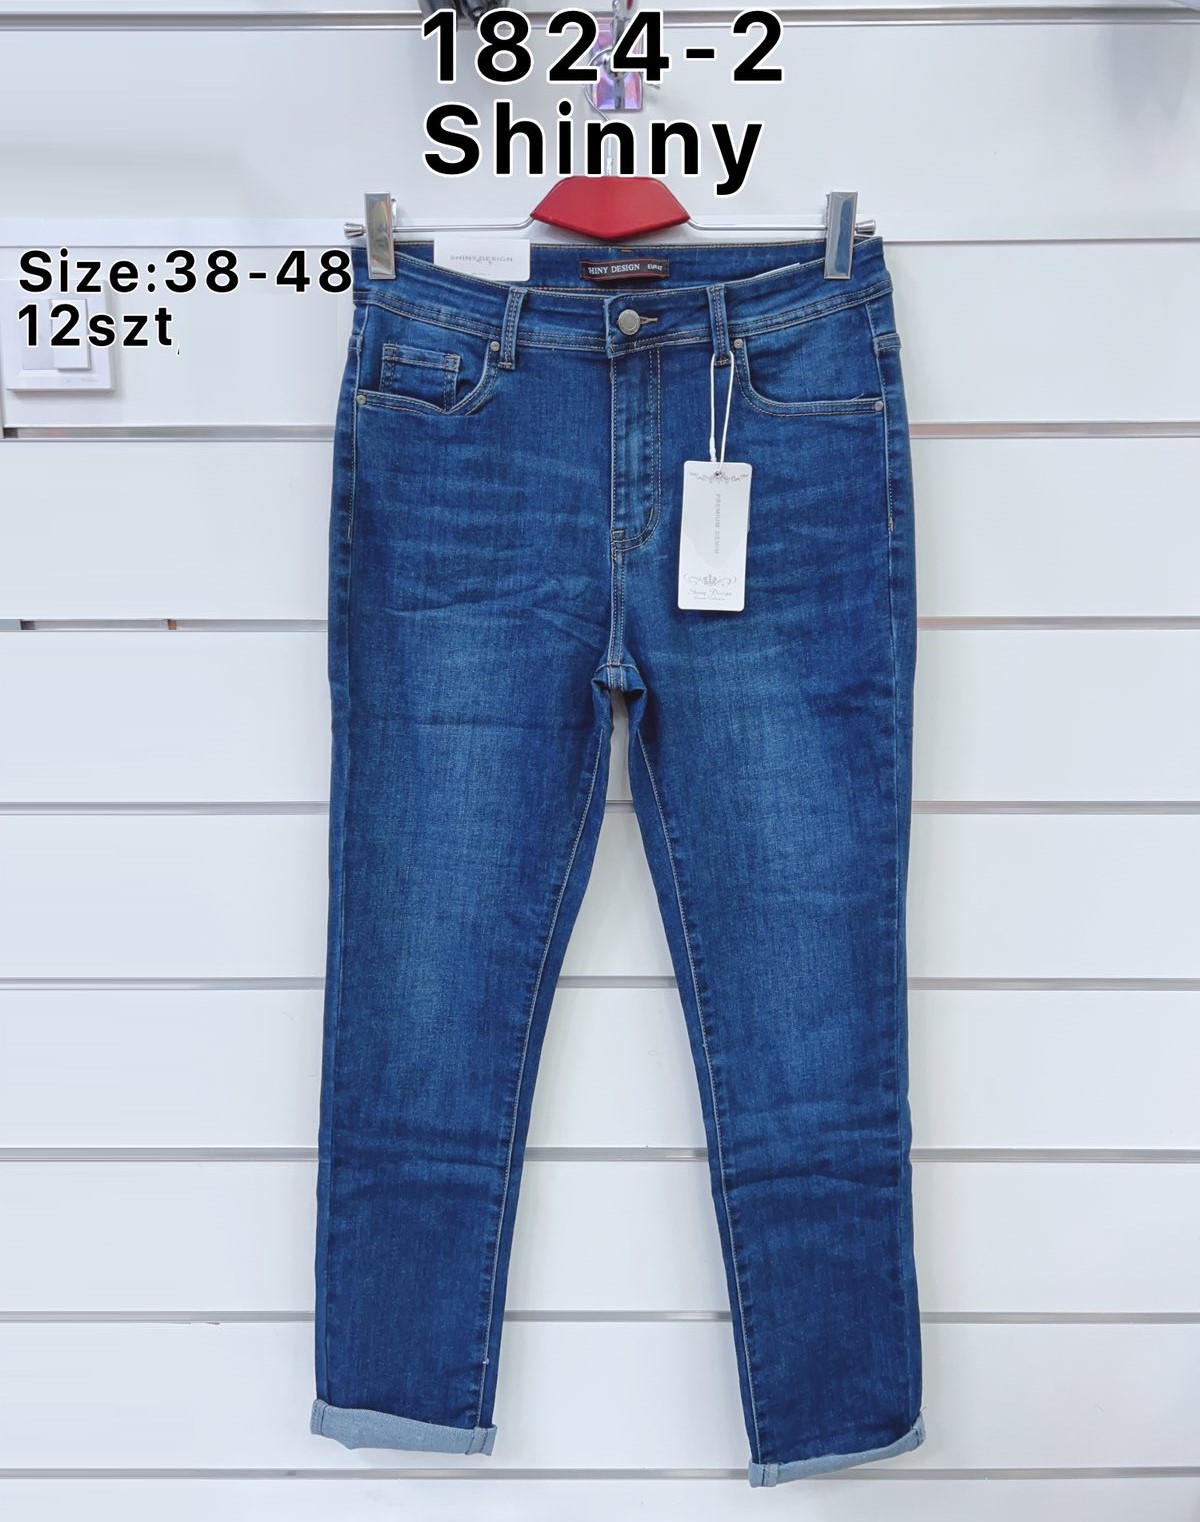 Spodnie  damskie jeans Roz  38-48.  1 kolor . Paczka 12szt